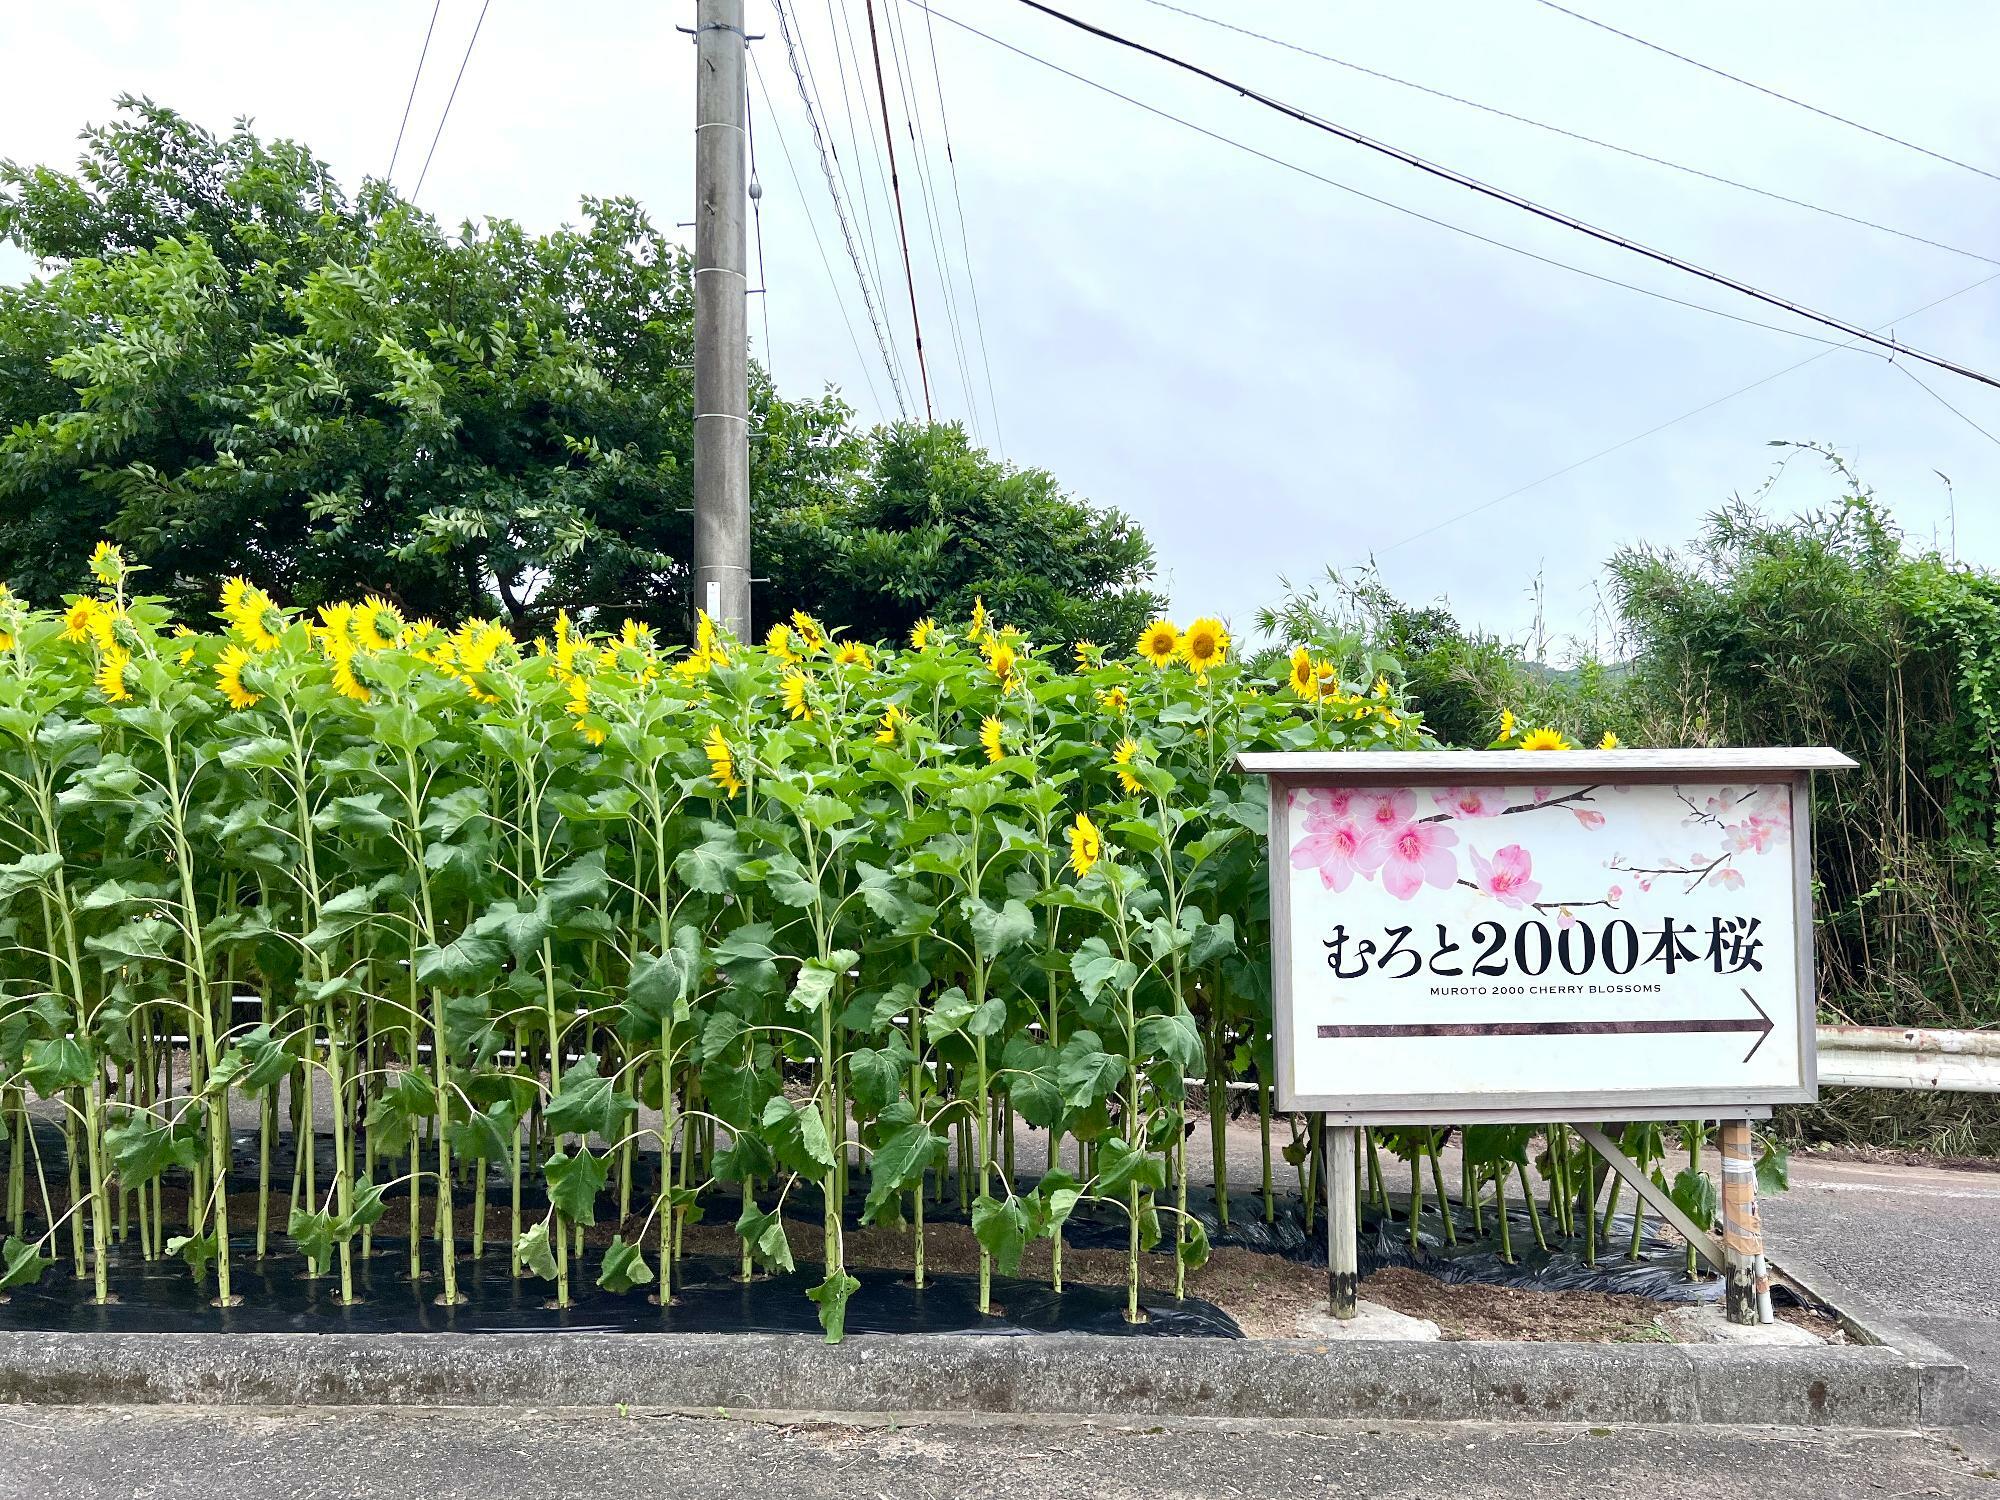 高知県立室戸広域公園入り口の「むろと2000本桜」看板とともに